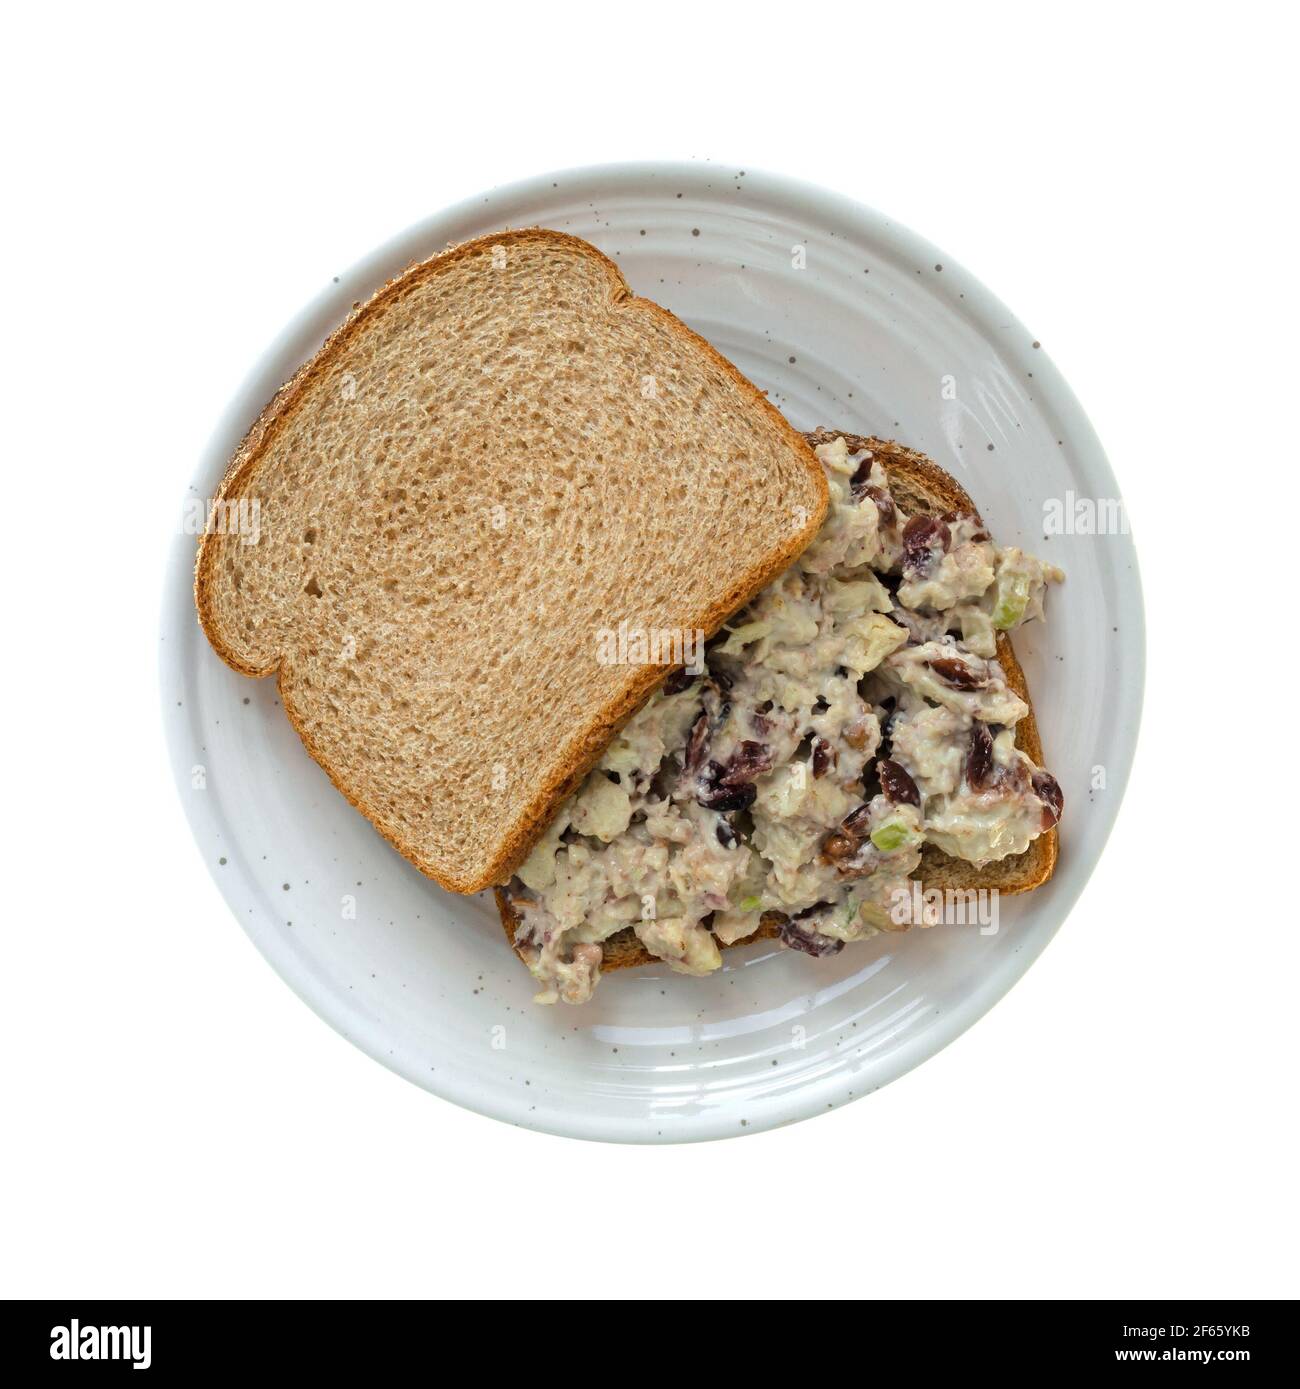 Vue de dessus d'un sandwich maison de salade de poulet avec des canneberges et du céleri sur du pain de blé isolé sur un fond blanc. Banque D'Images